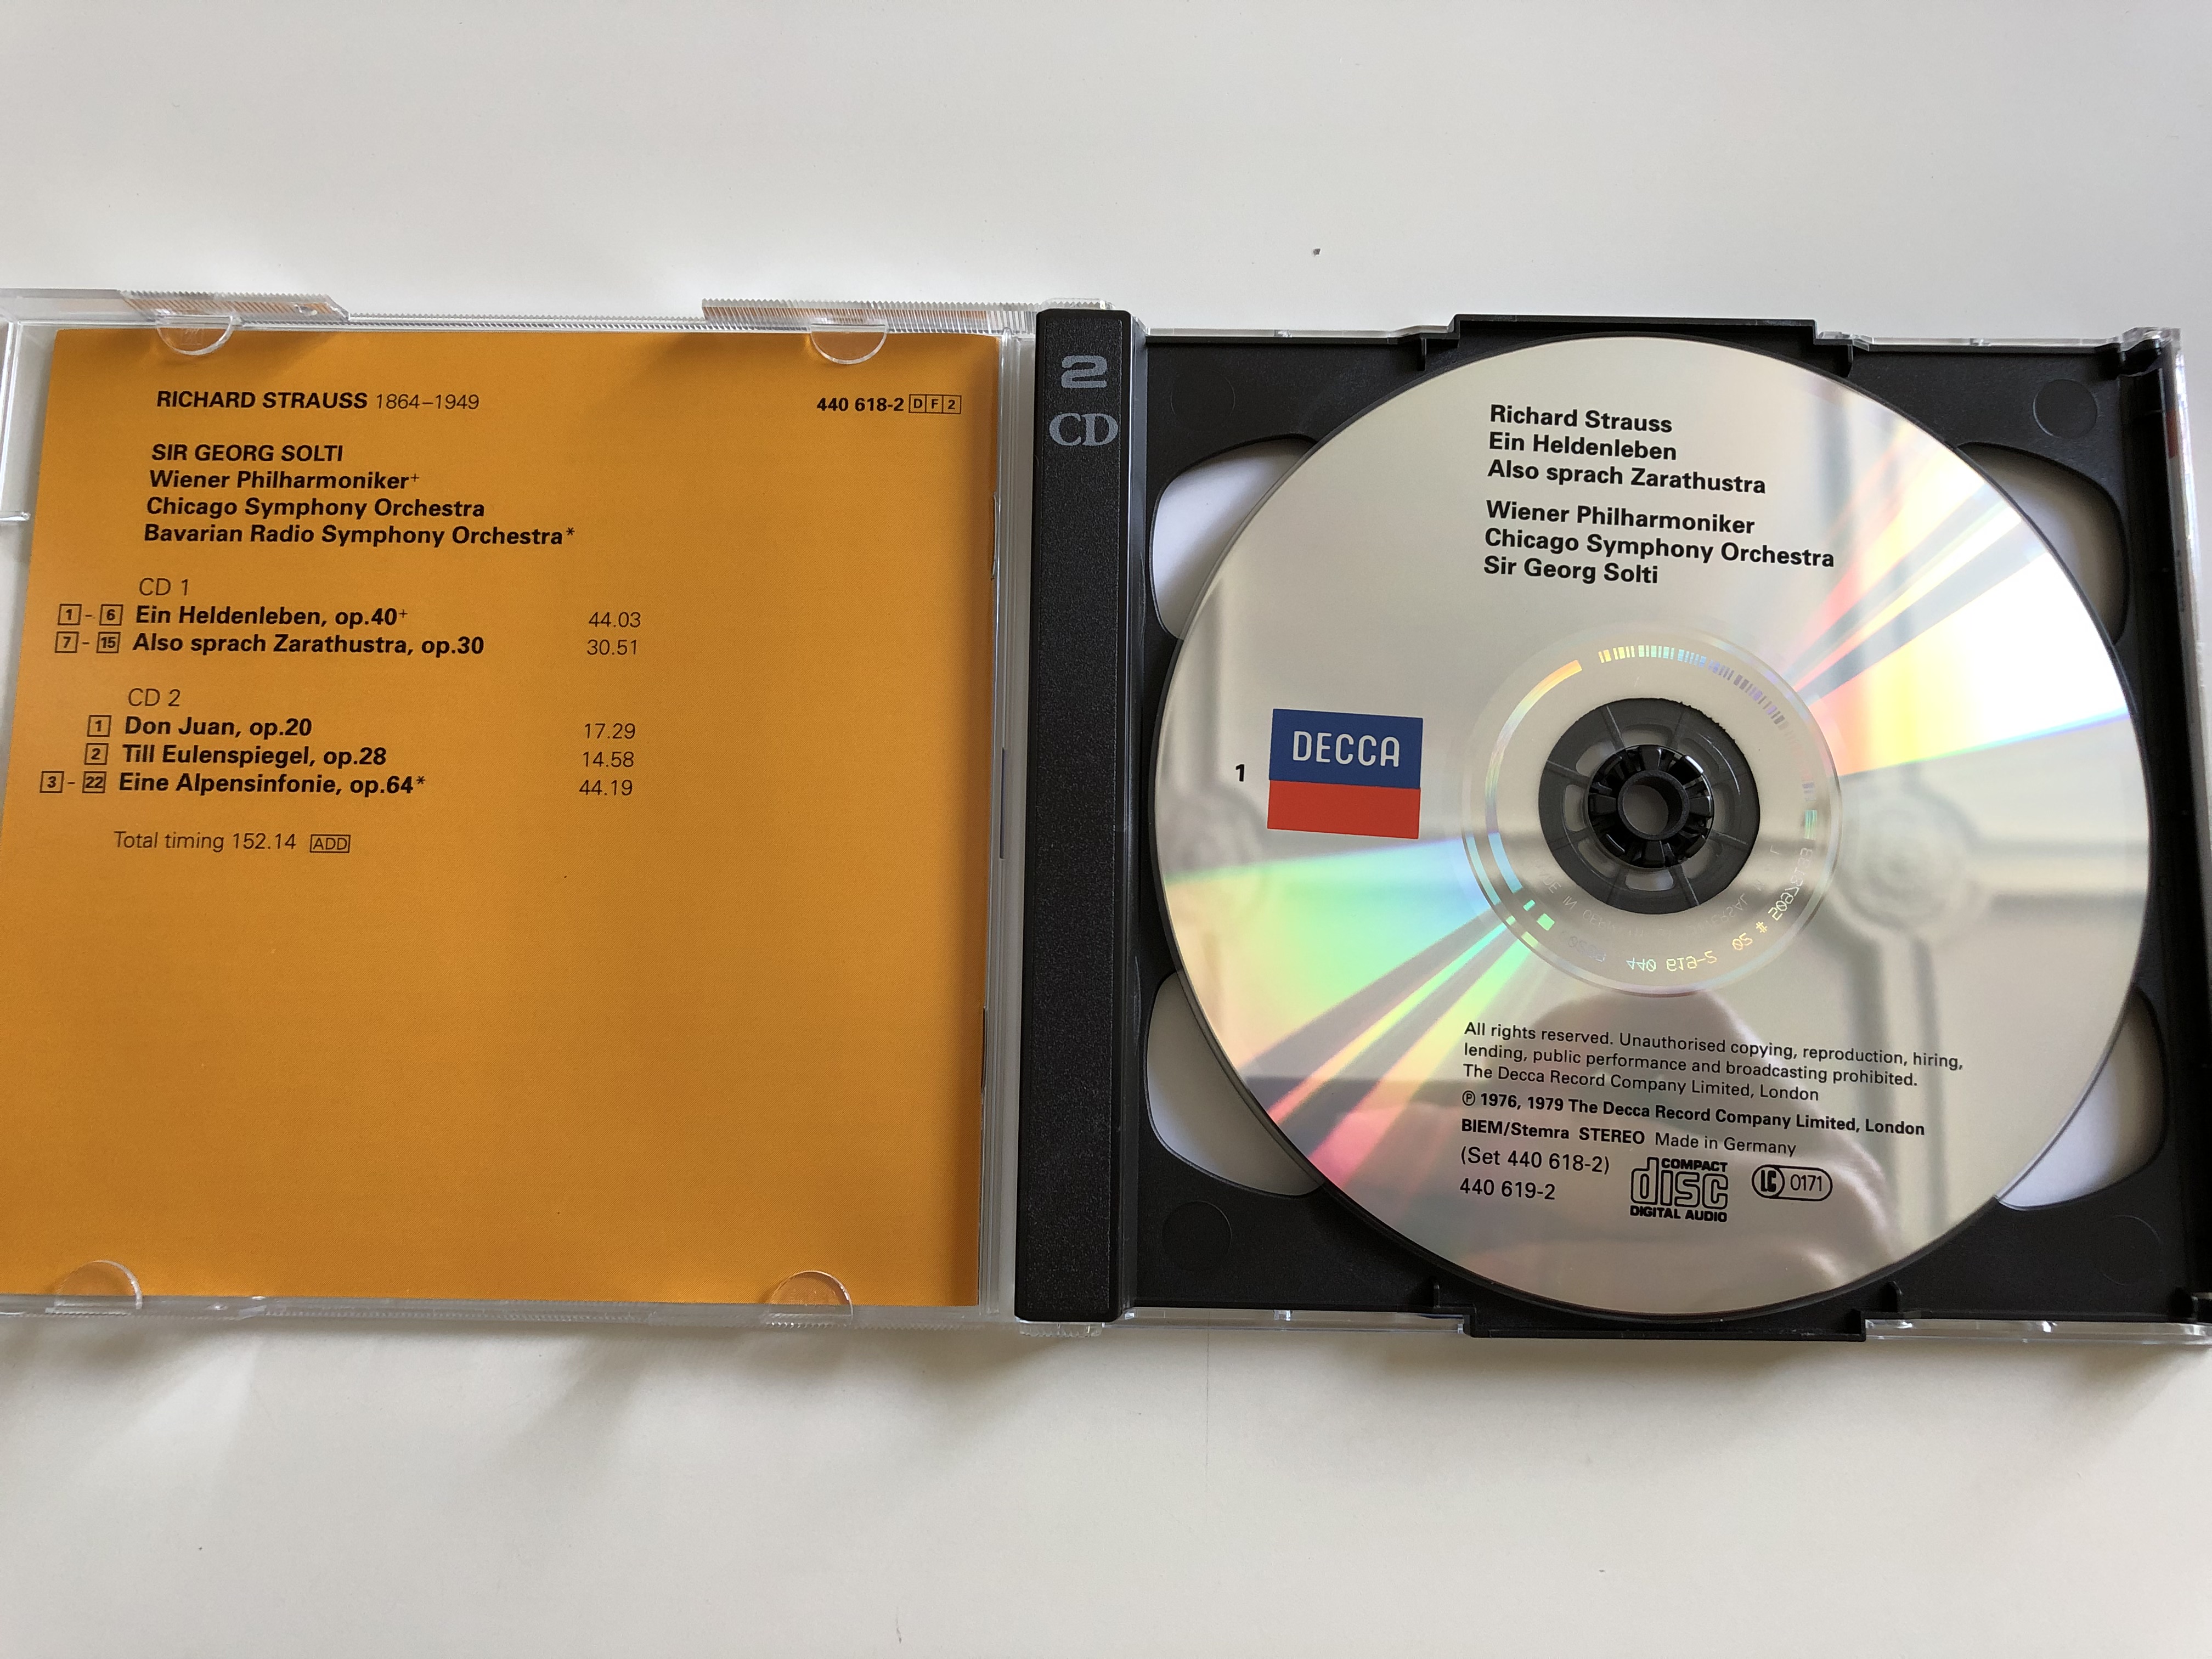 richard-strauss-also-sprach-zarathustra-ein-heldenleben-eine-alpensinfonie-don-juan-till-eulenspiegel-conducted-by-sir-georg-solti-double-decca-2-cd-audio-cd-set-1994-5-.jpg